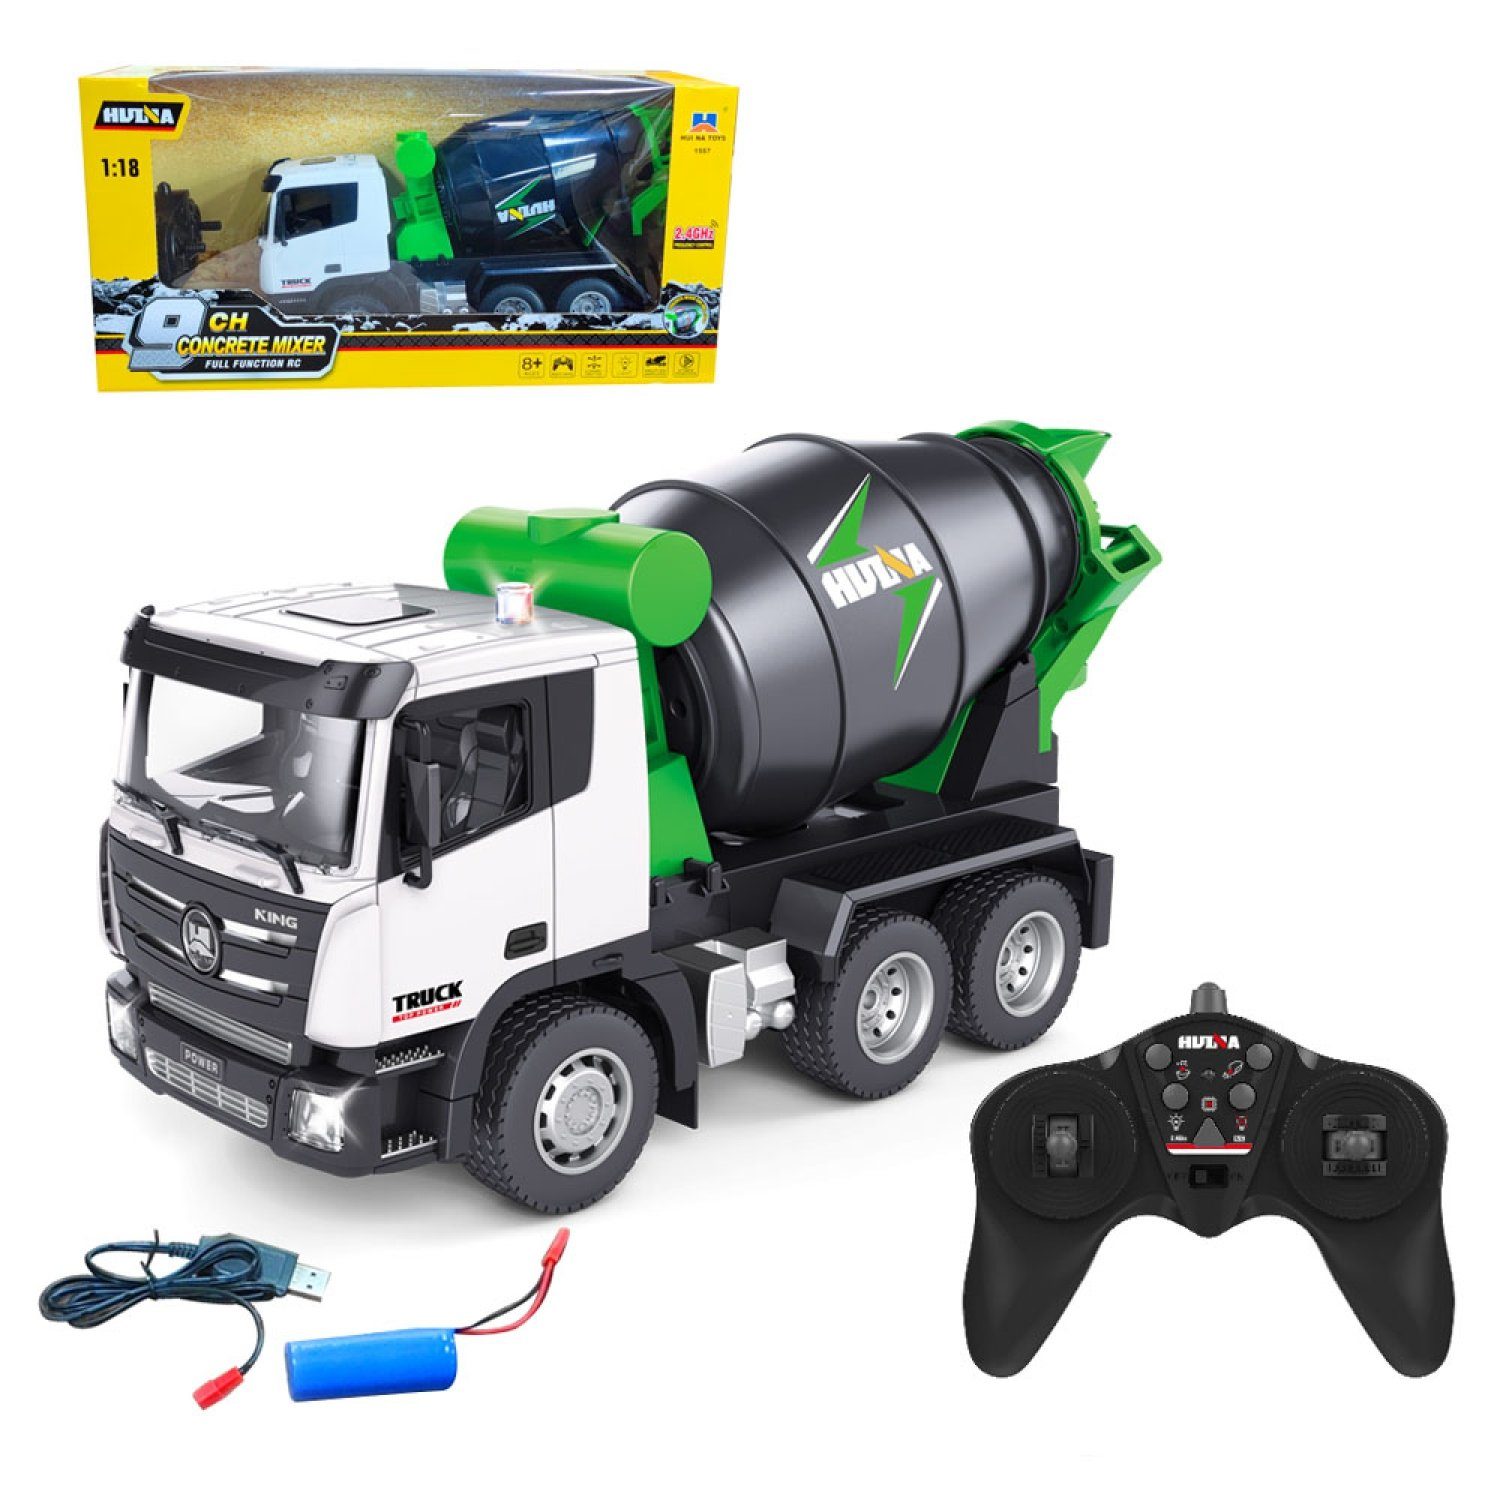 Esun RC-Truck RC Concrete Mixer Truck, Modell baufahrzeuge, (Set, Komplettset), Spielzeug ab 4 5 6 8 jahre jungen mit 2.4GHz